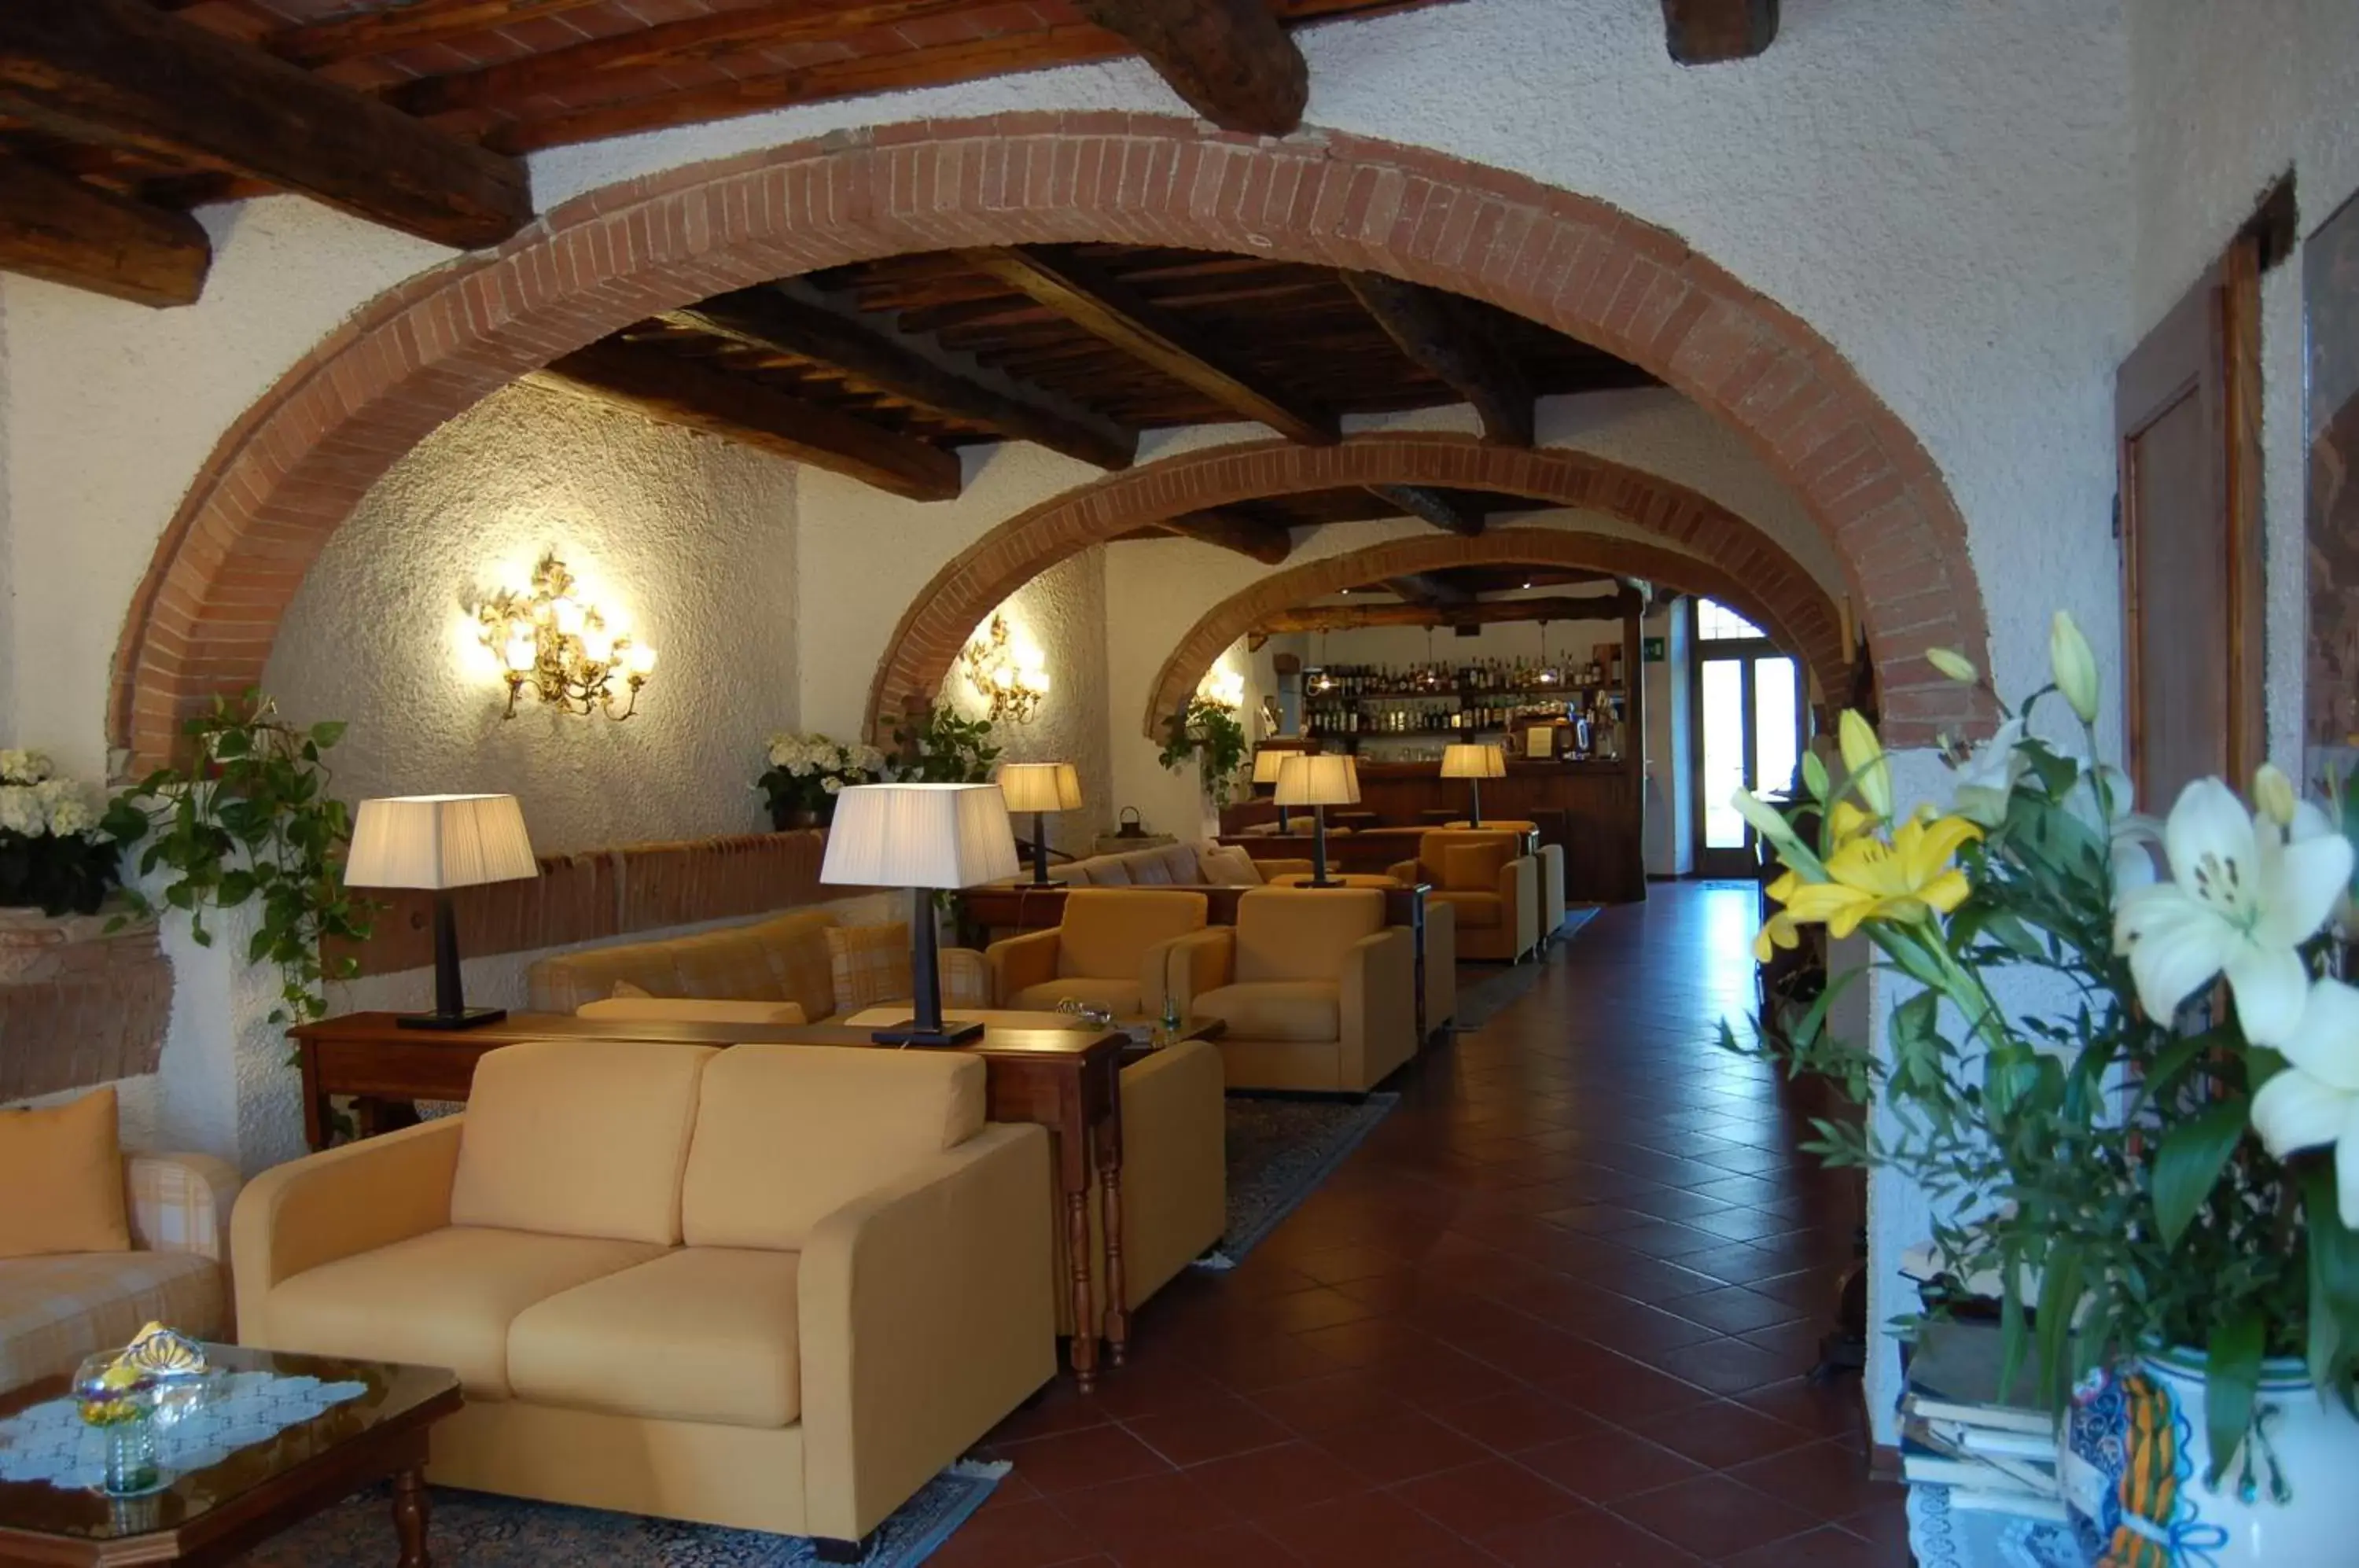 Lobby or reception in Hotel Belvedere Di San Leonino